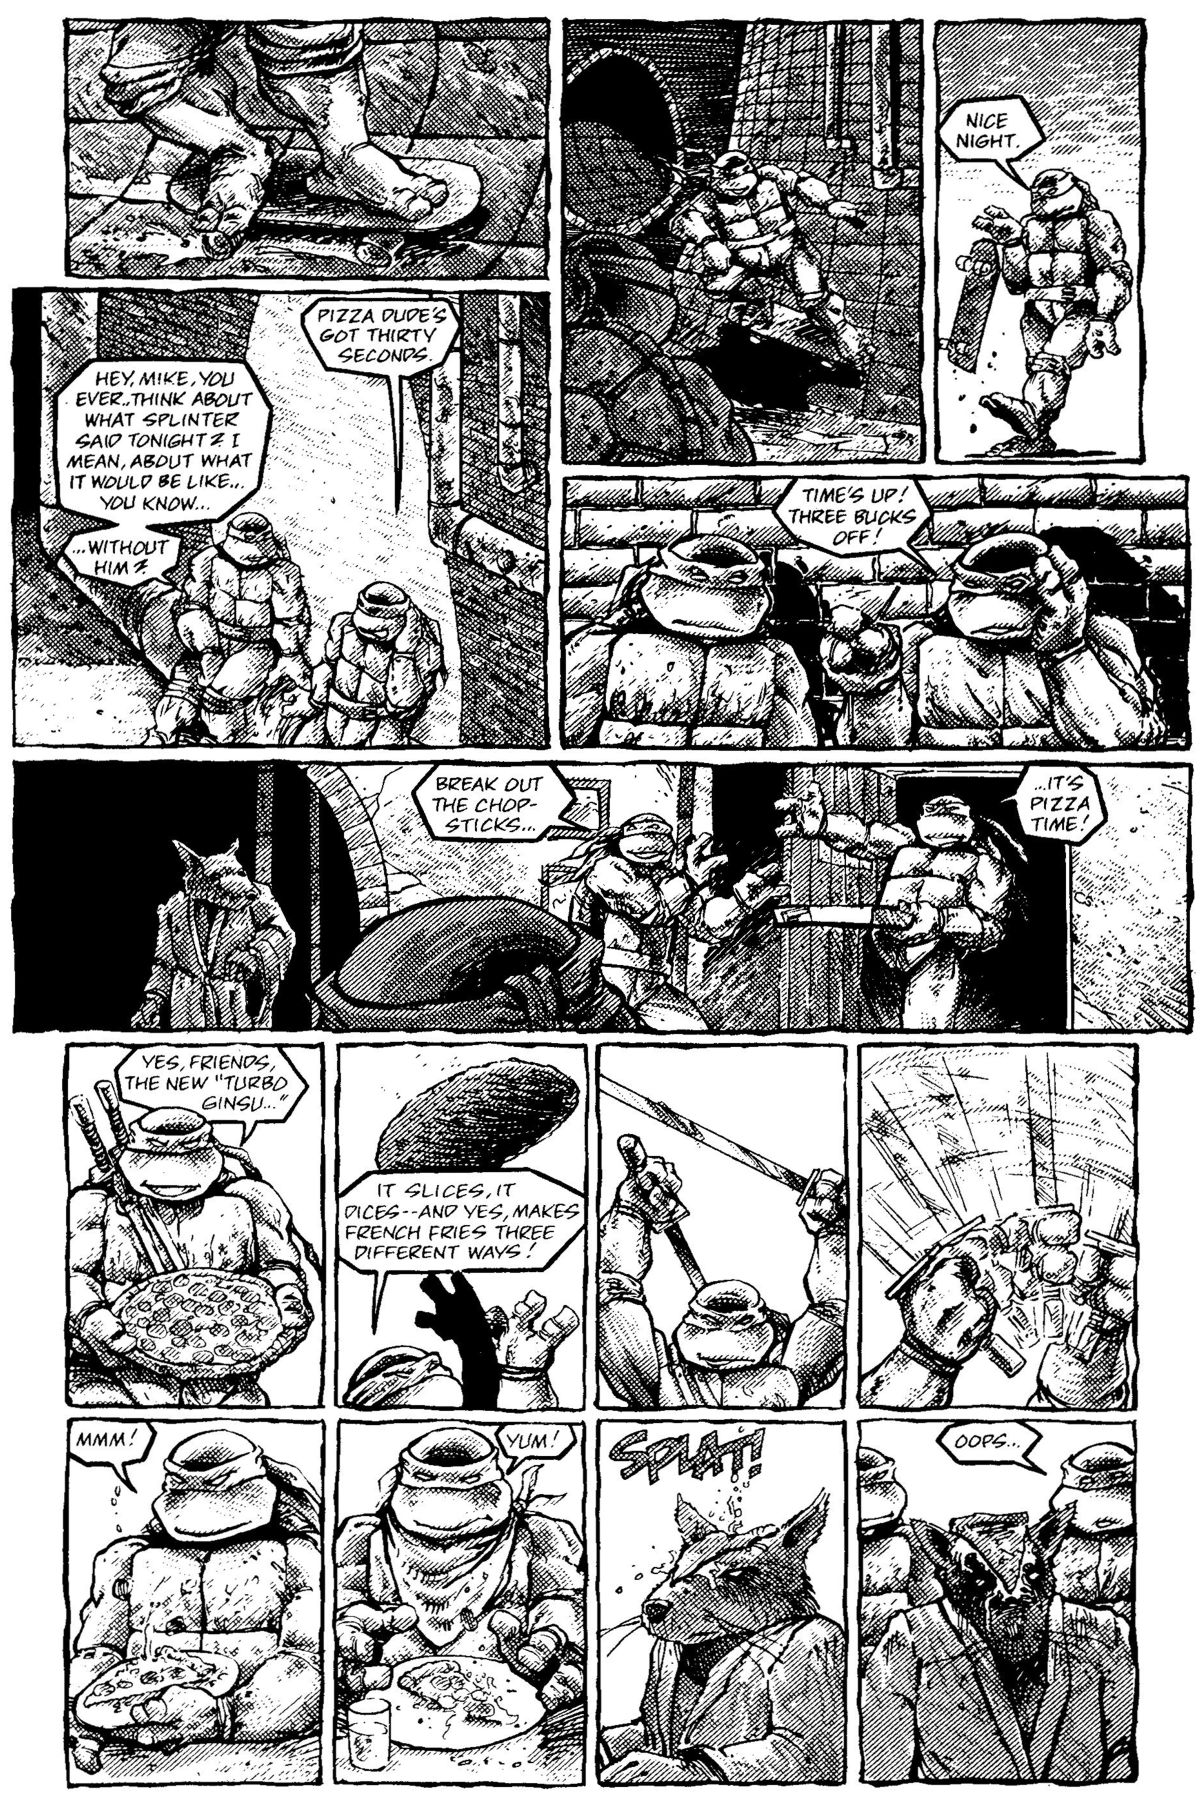 Read online Teenage Mutant Ninja Turtles: The Movie comic -  Issue # Full - 16